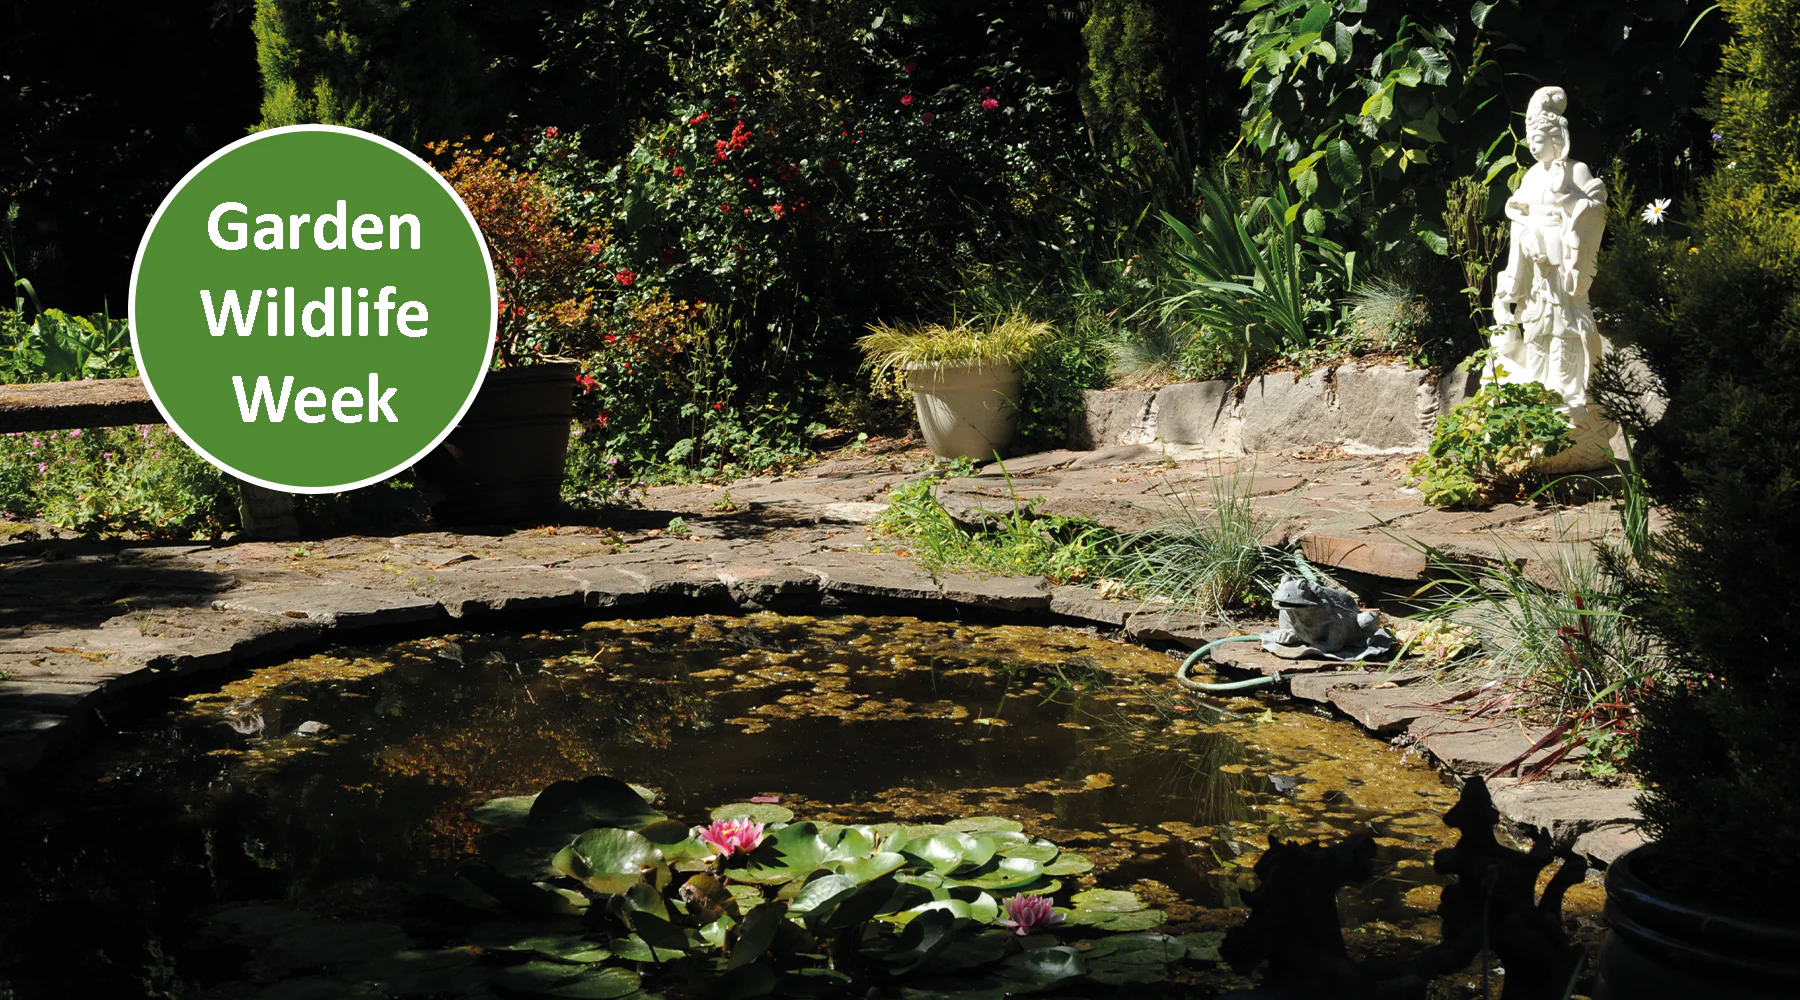 Garden wildlife week - How adding a pond will help garden wildlife